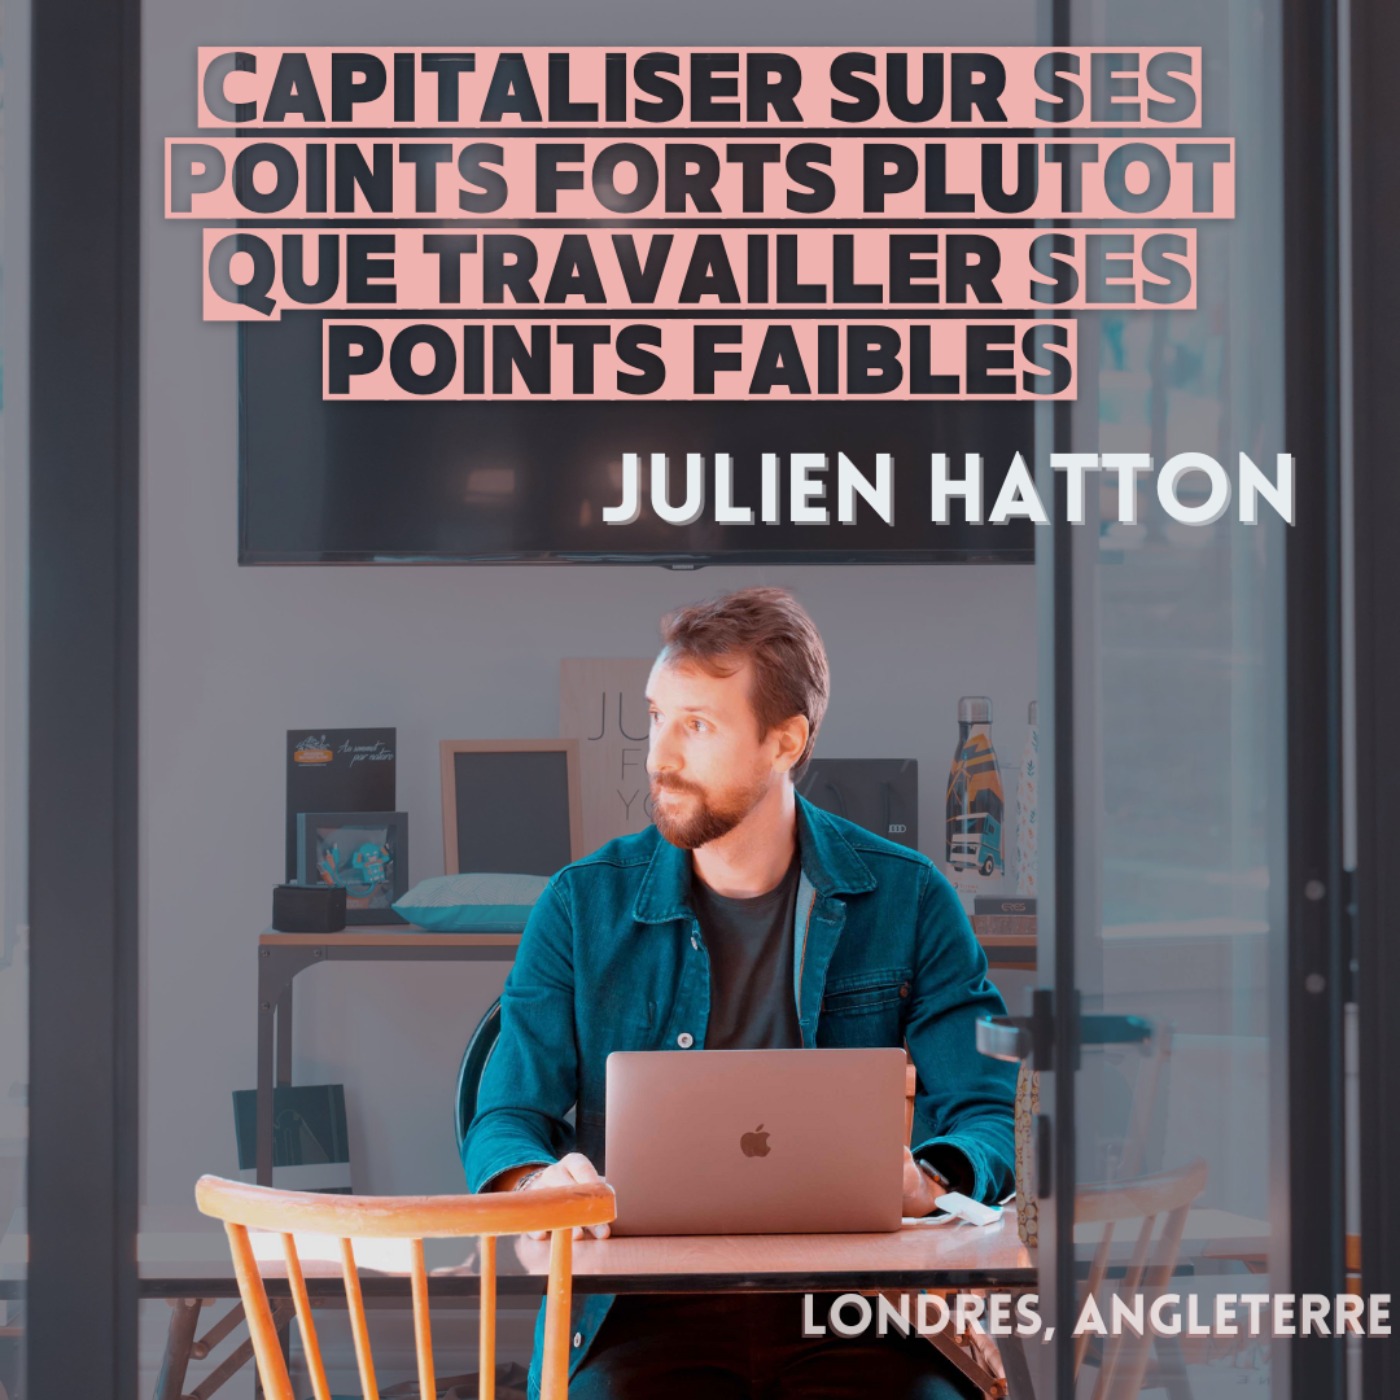 cover art for Julien Hatton : Capitaliser sur ses points forts plutôt que travailler ses points faibles